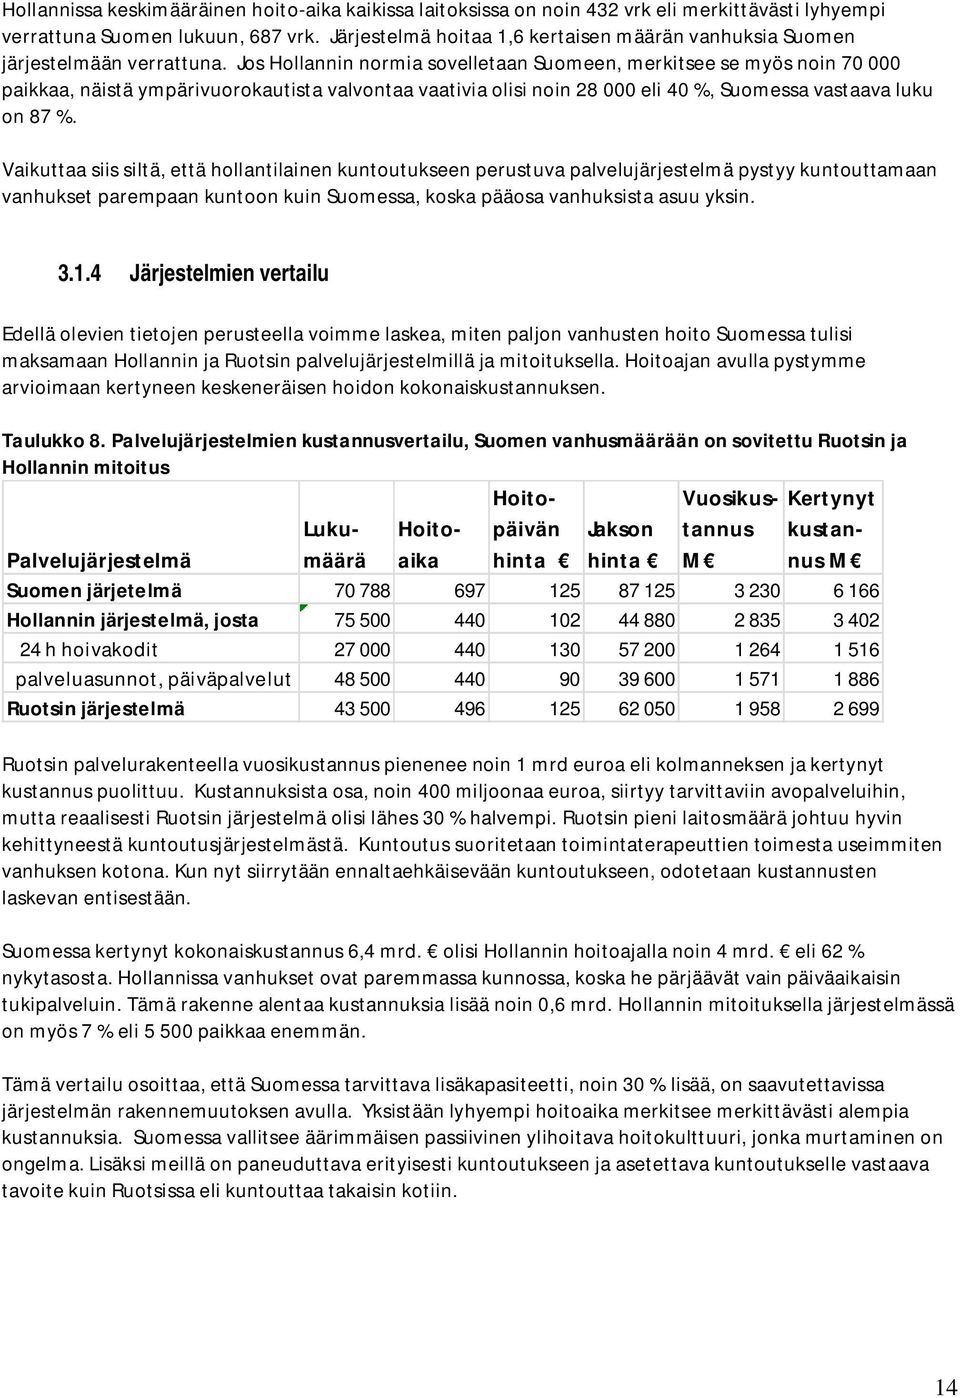 Jos Hollannin normia sovelletaan Suomeen, merkitsee se myös noin 70 000 paikkaa, näistä ympärivuorokautista valvontaa vaativia olisi noin 28 000 eli 40 %, Suomessa vastaava luku on 87 %.